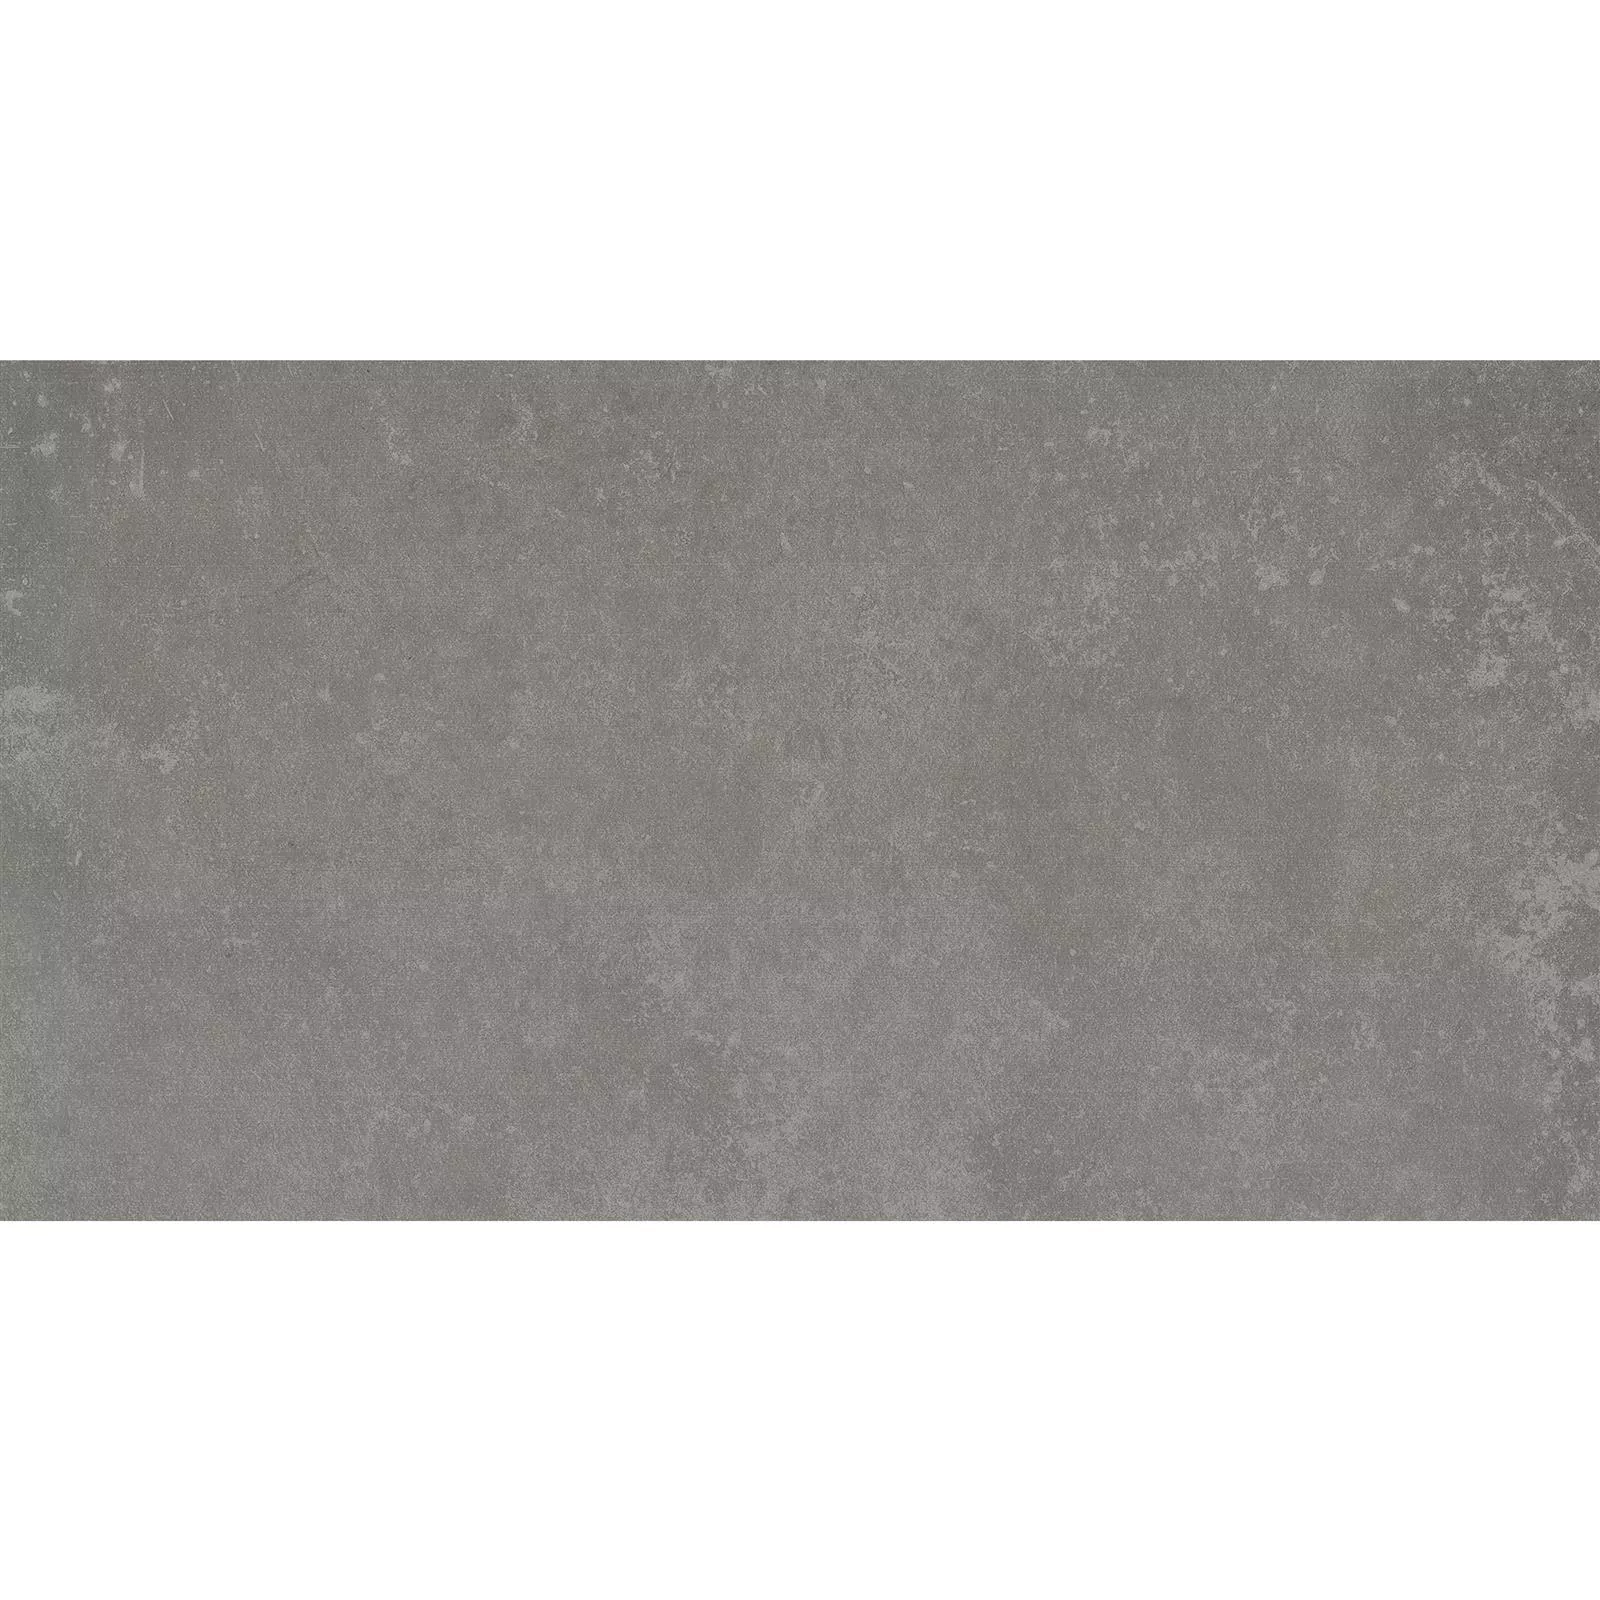 Ladrilhos Nepal Cinza Bege 30x60x0,7cm